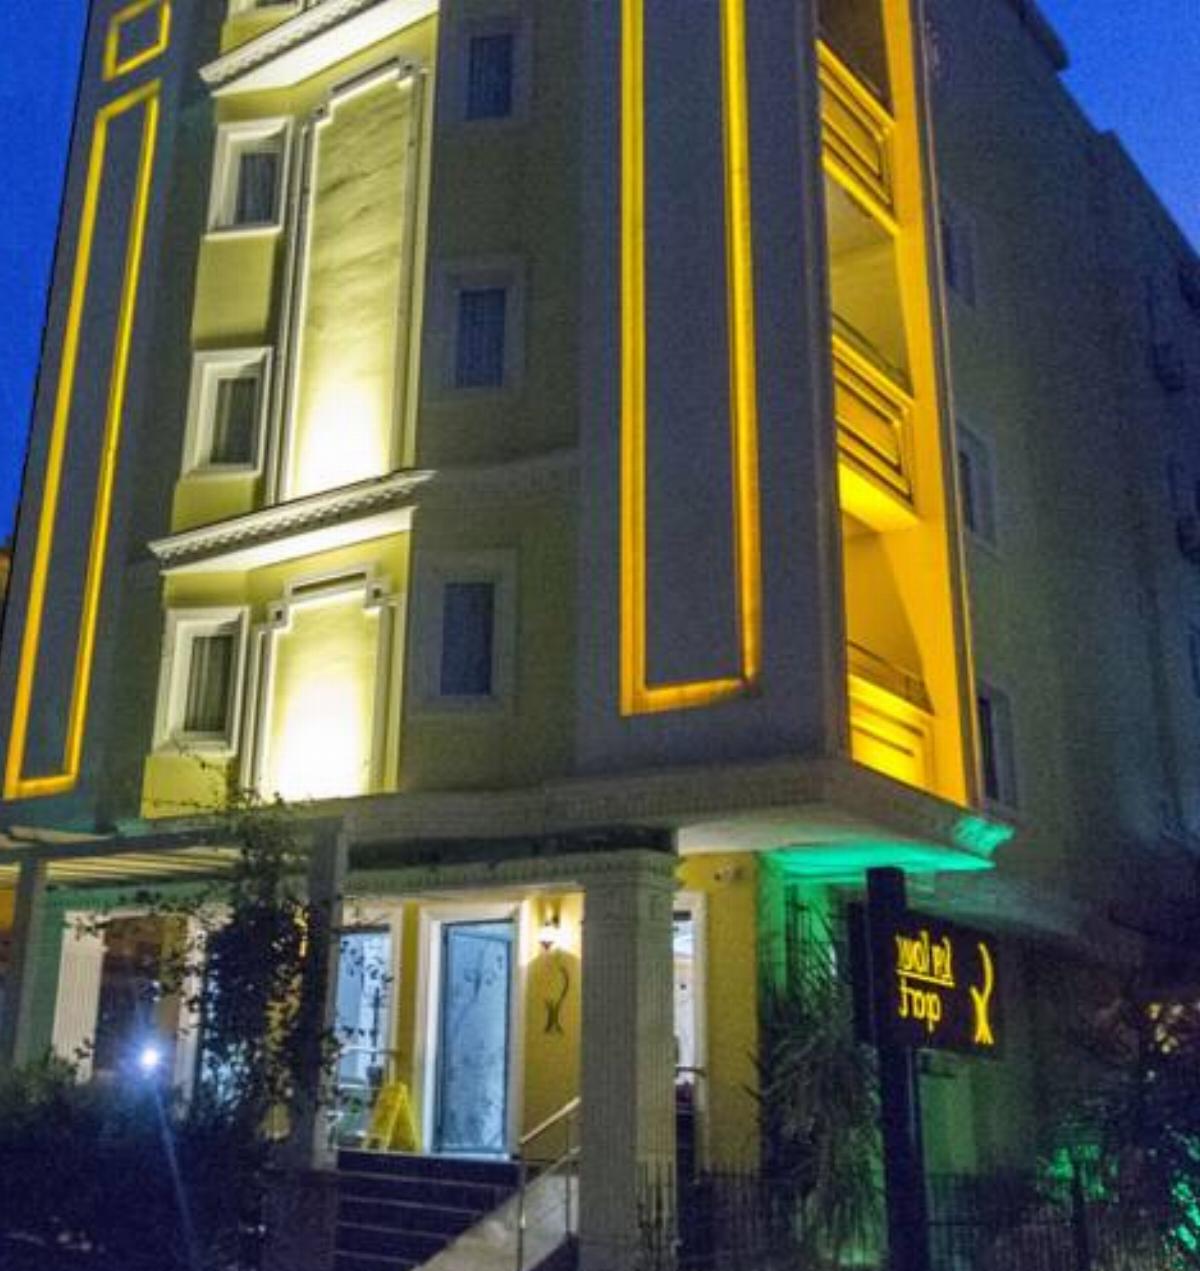 Sari Konak Apart Hotel Hotel Adana Turkey